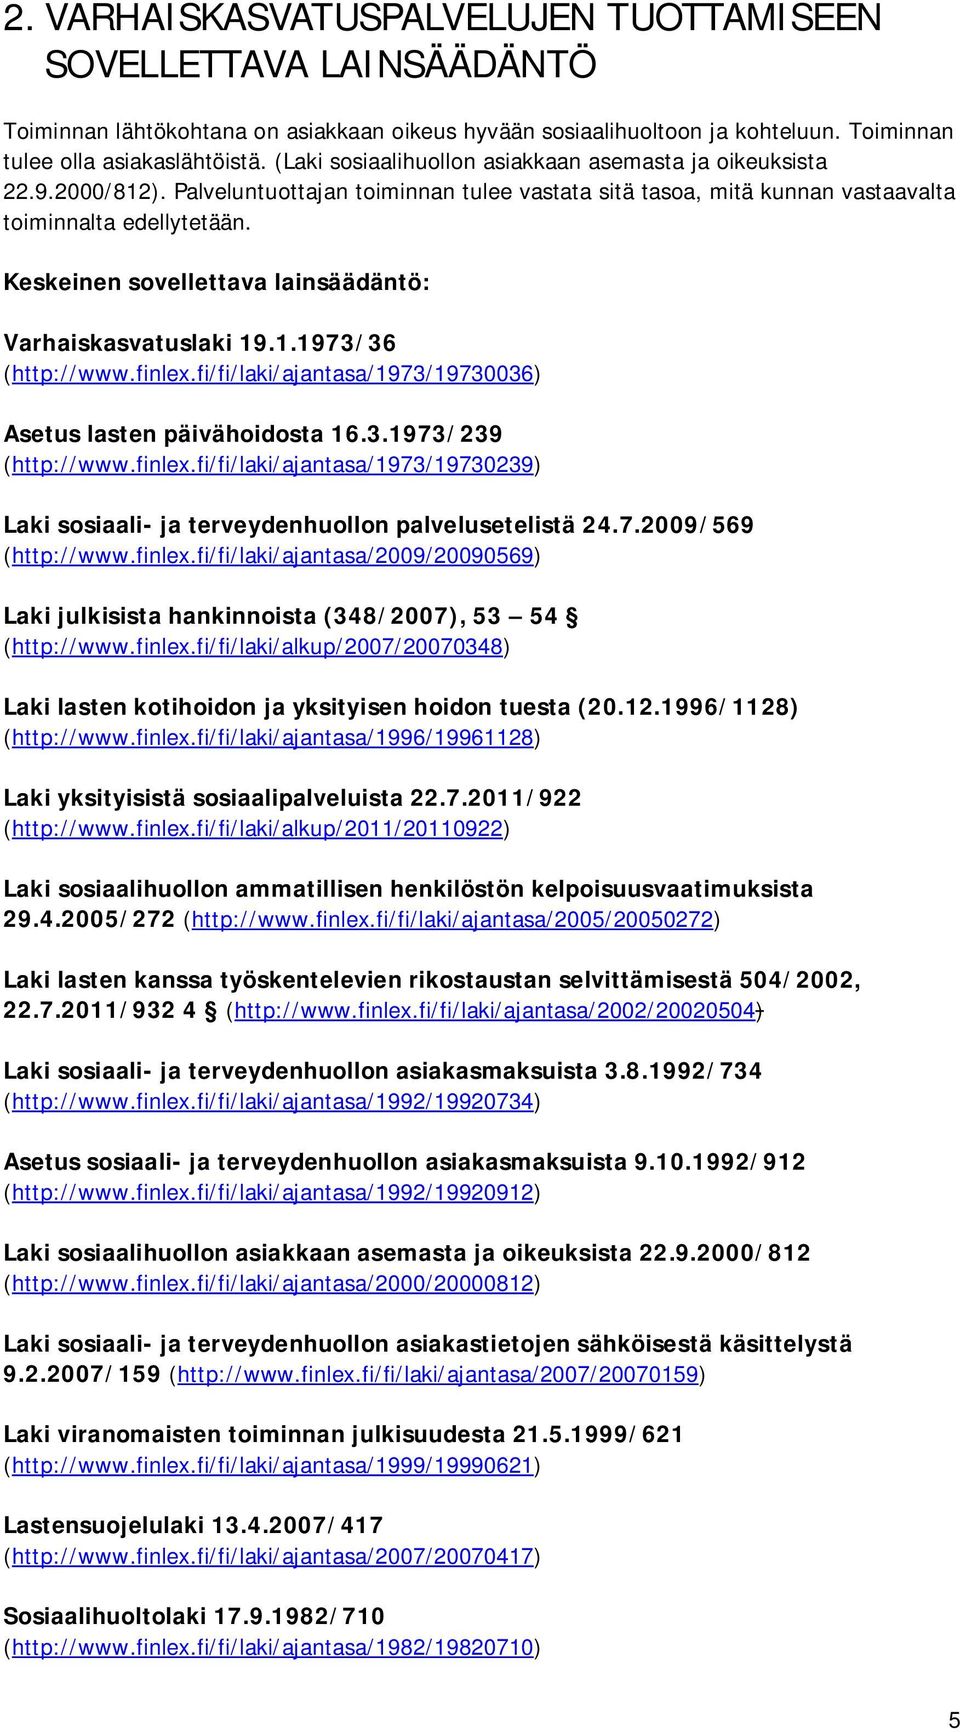 Keskeinen sovellettava lainsäädäntö: Varhaiskasvatuslaki 19.1.1973/36 (http://www.finlex.fi/fi/laki/ajantasa/1973/19730036) Asetus lasten päivähoidosta 16.3.1973/239 (http://www.finlex.fi/fi/laki/ajantasa/1973/19730239) Laki sosiaali- ja terveydenhuollon palvelusetelistä 24.